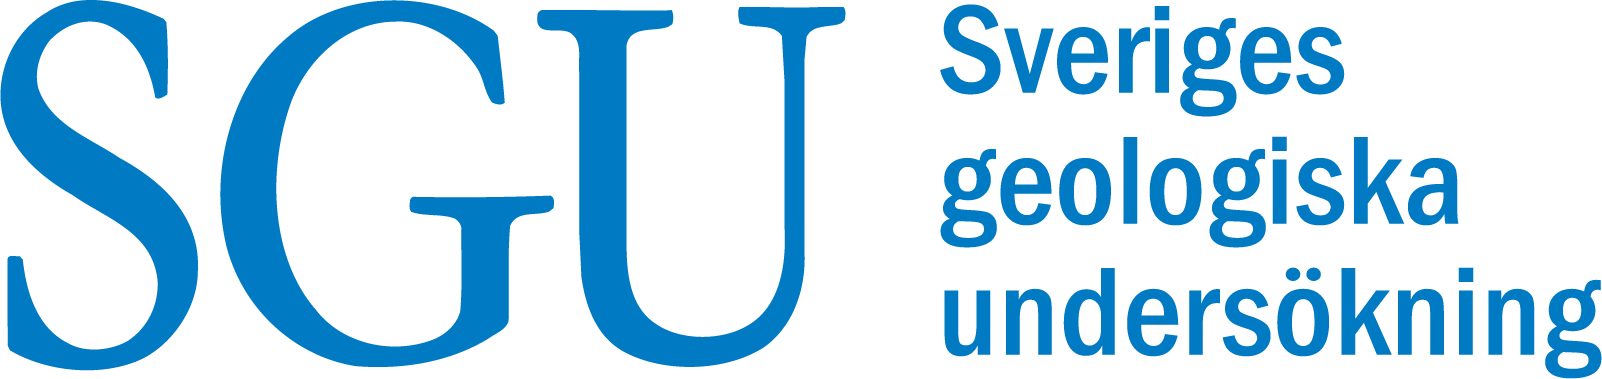 Sveriges Geologiska Undersökning (SGU)